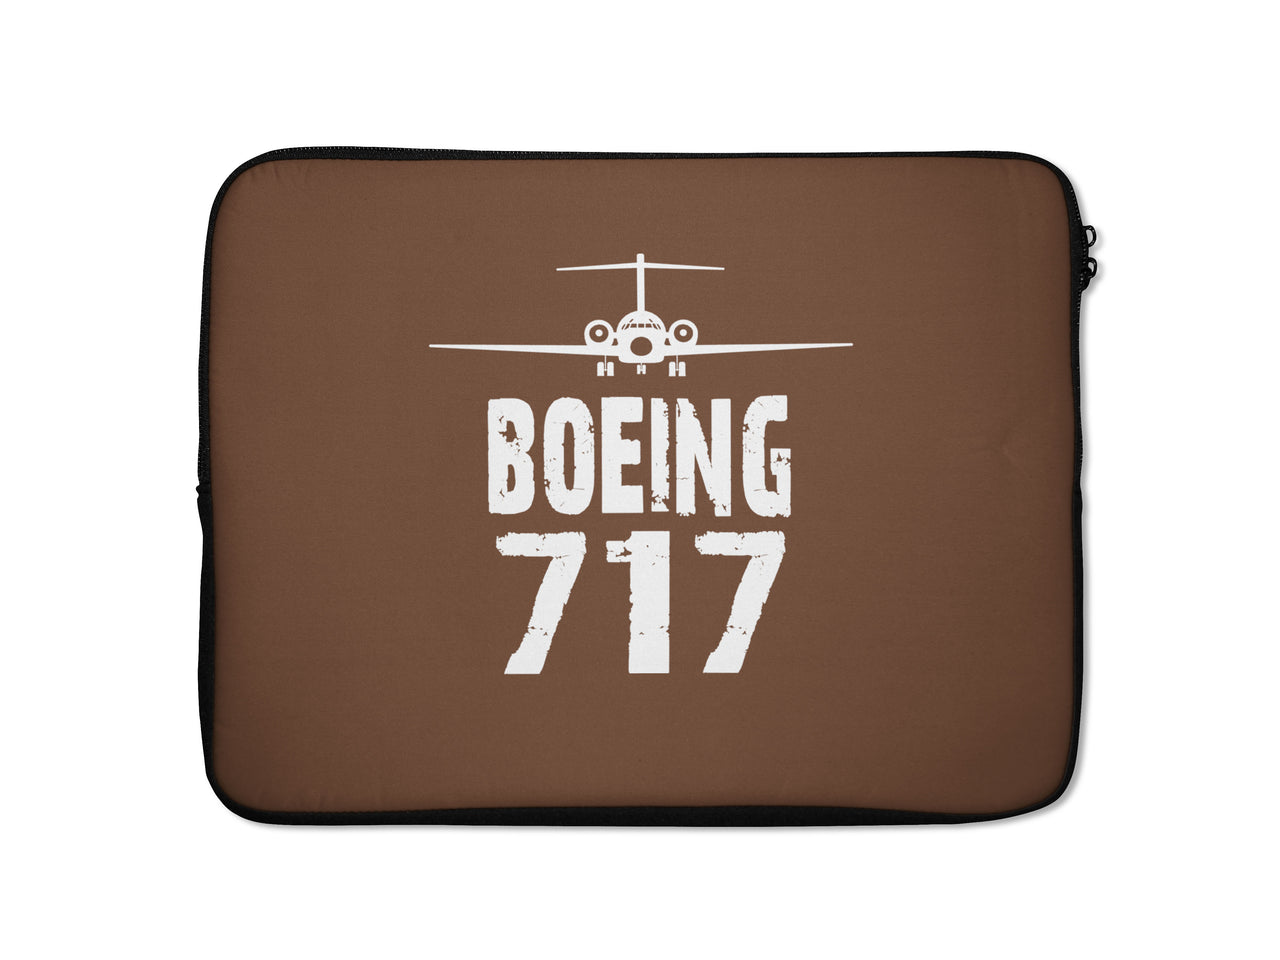 Boeing 717 & Plane Designed Laptop & Tablet Cases